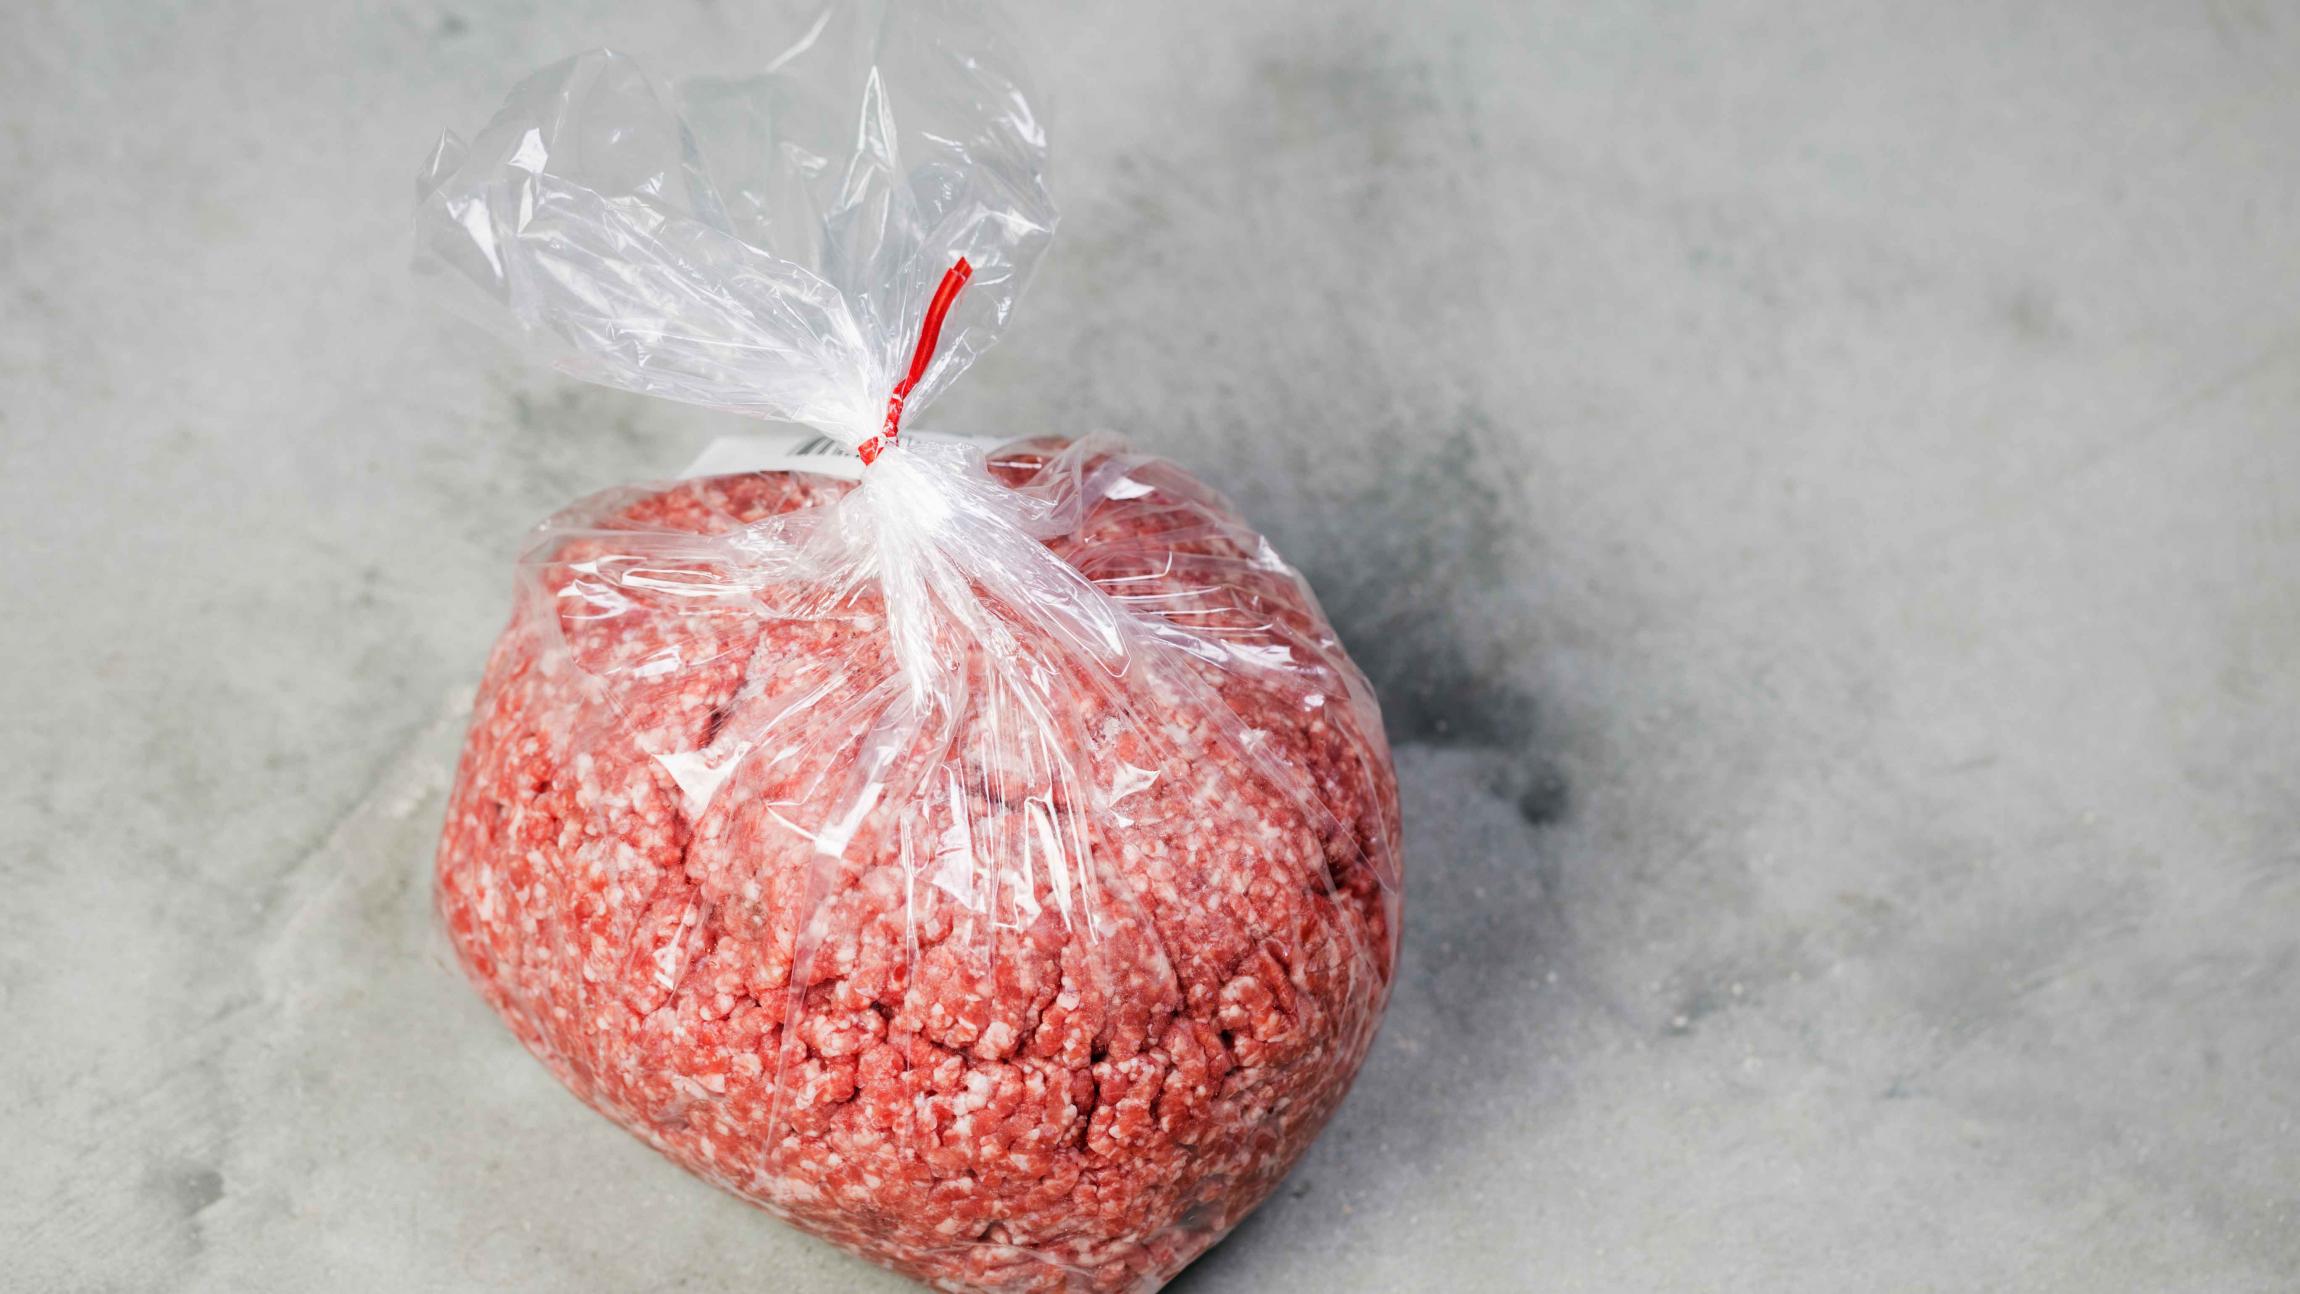 bekræfte fordomme Hævde Fryseposer er gode til madvarer - affaldsposer duer ikke | Samvirke